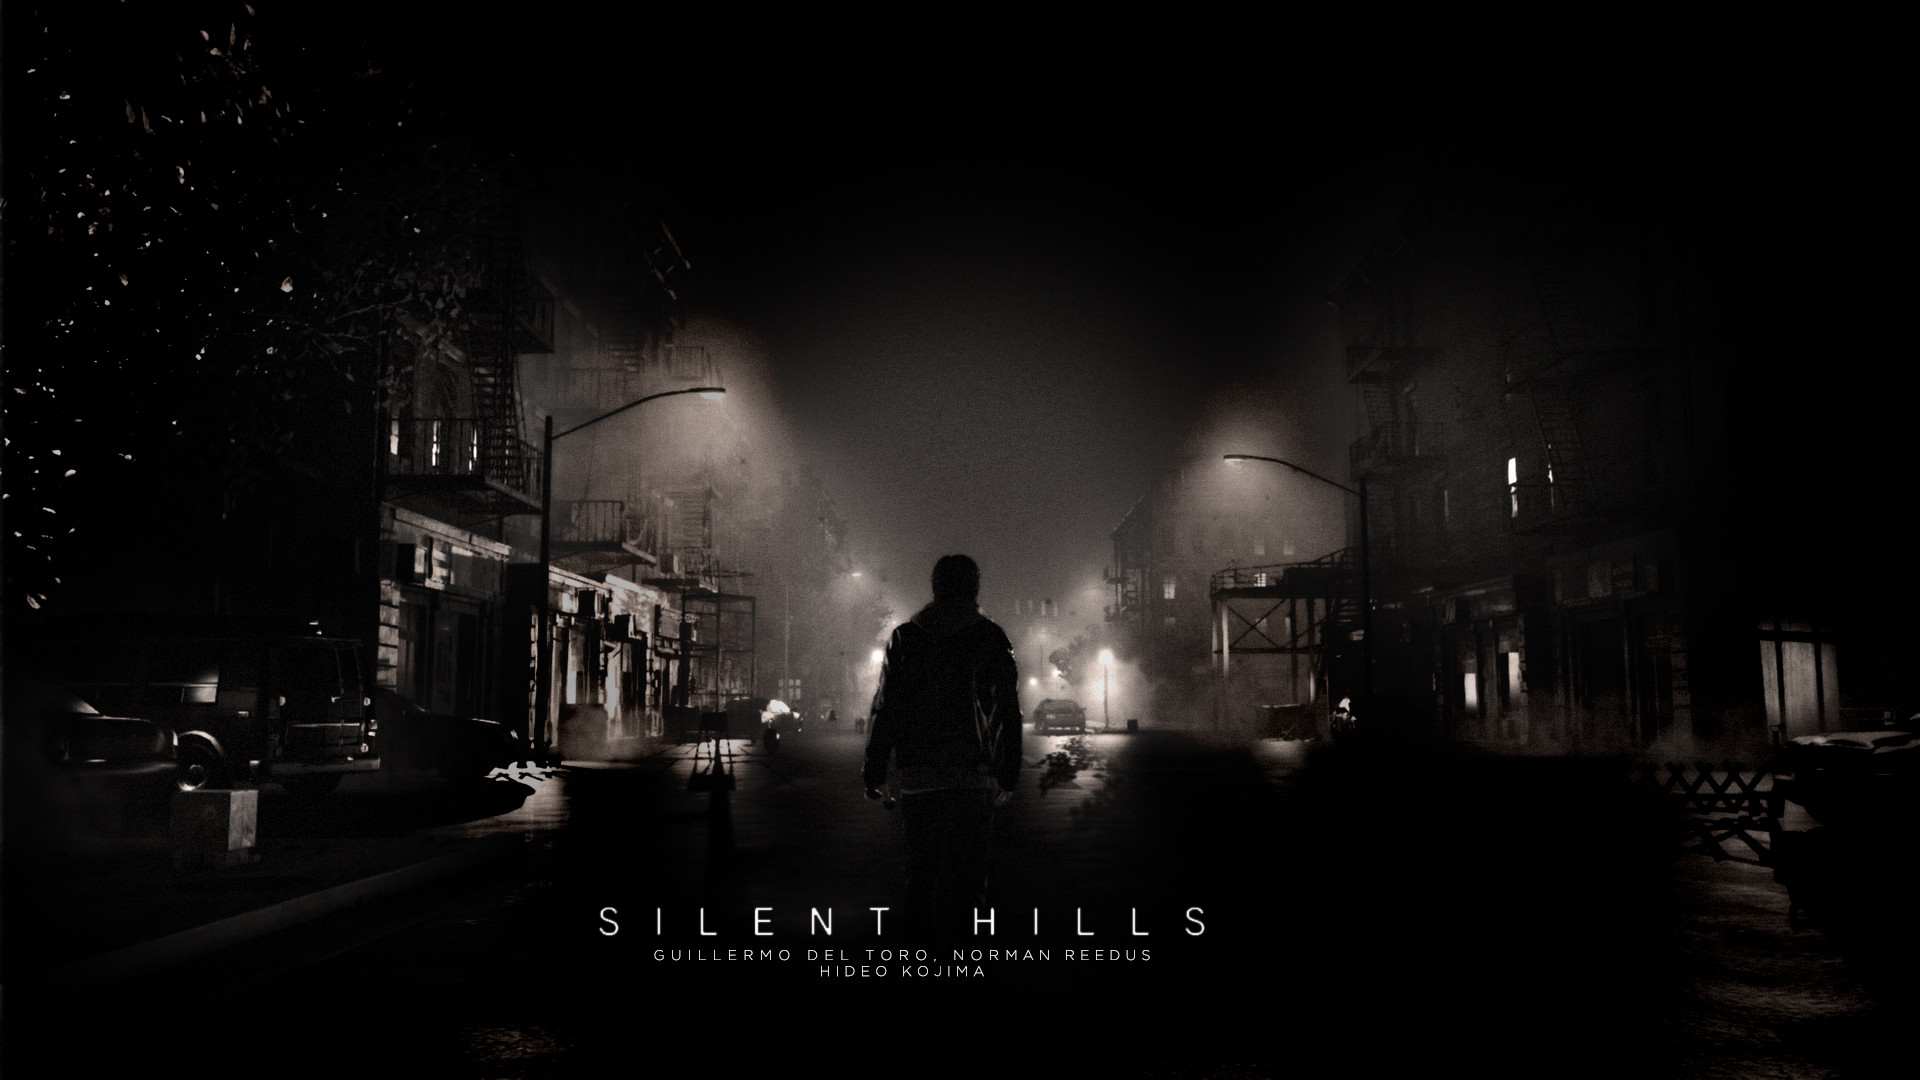 Silent Hill: due nuovi titoli in sviluppo?